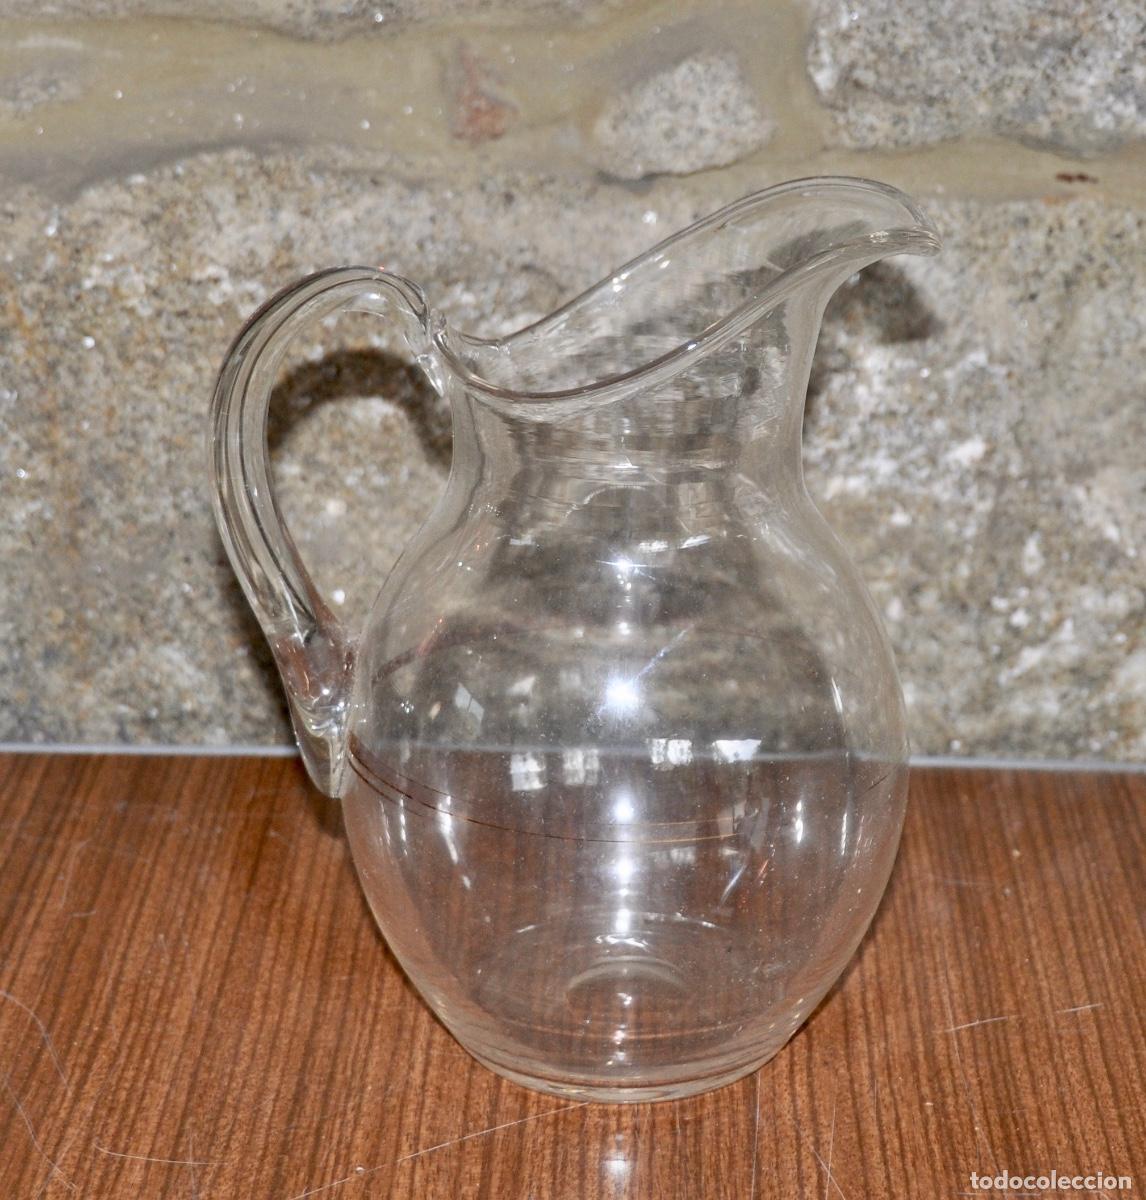 jarra de agua (cristal y plata) - Buy English crystal and glass on  todocoleccion